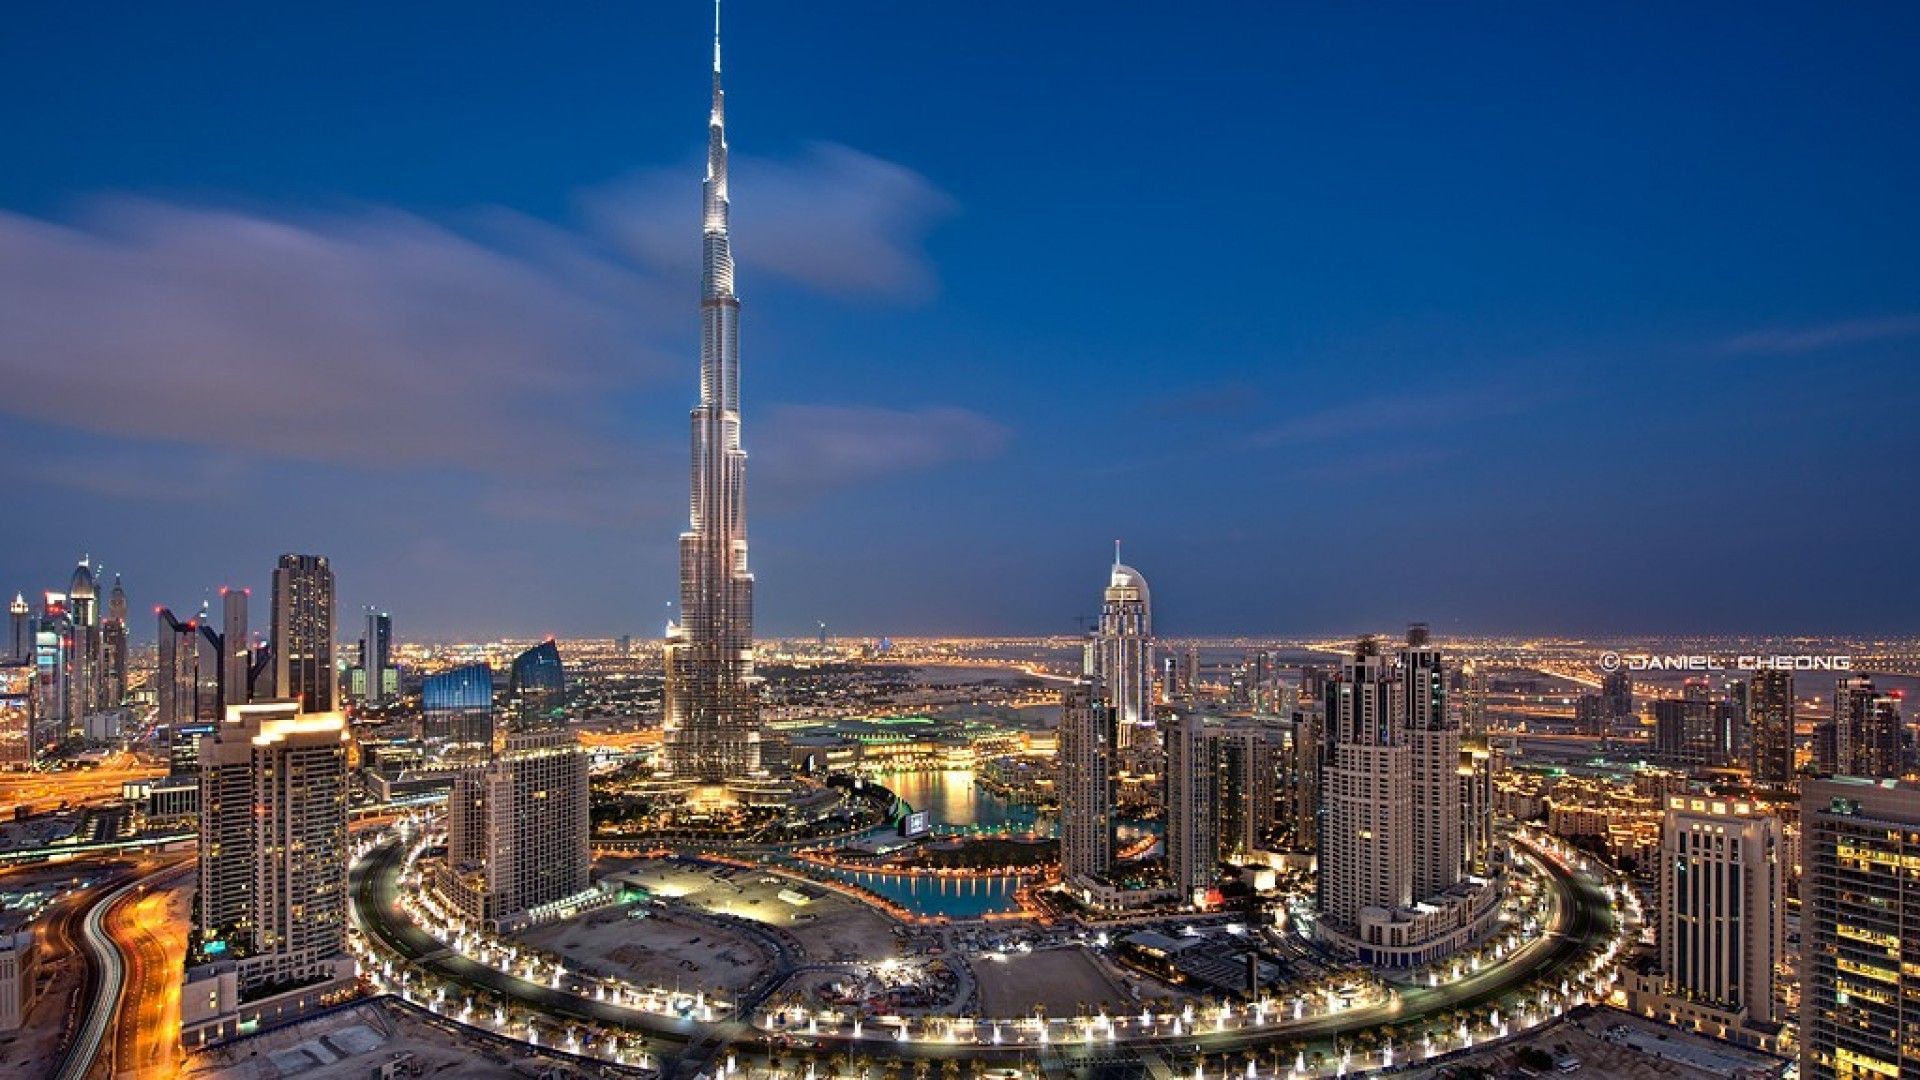 Download Burj Khalifa Skyscraper Dubai Images Wallpaper Widescreen